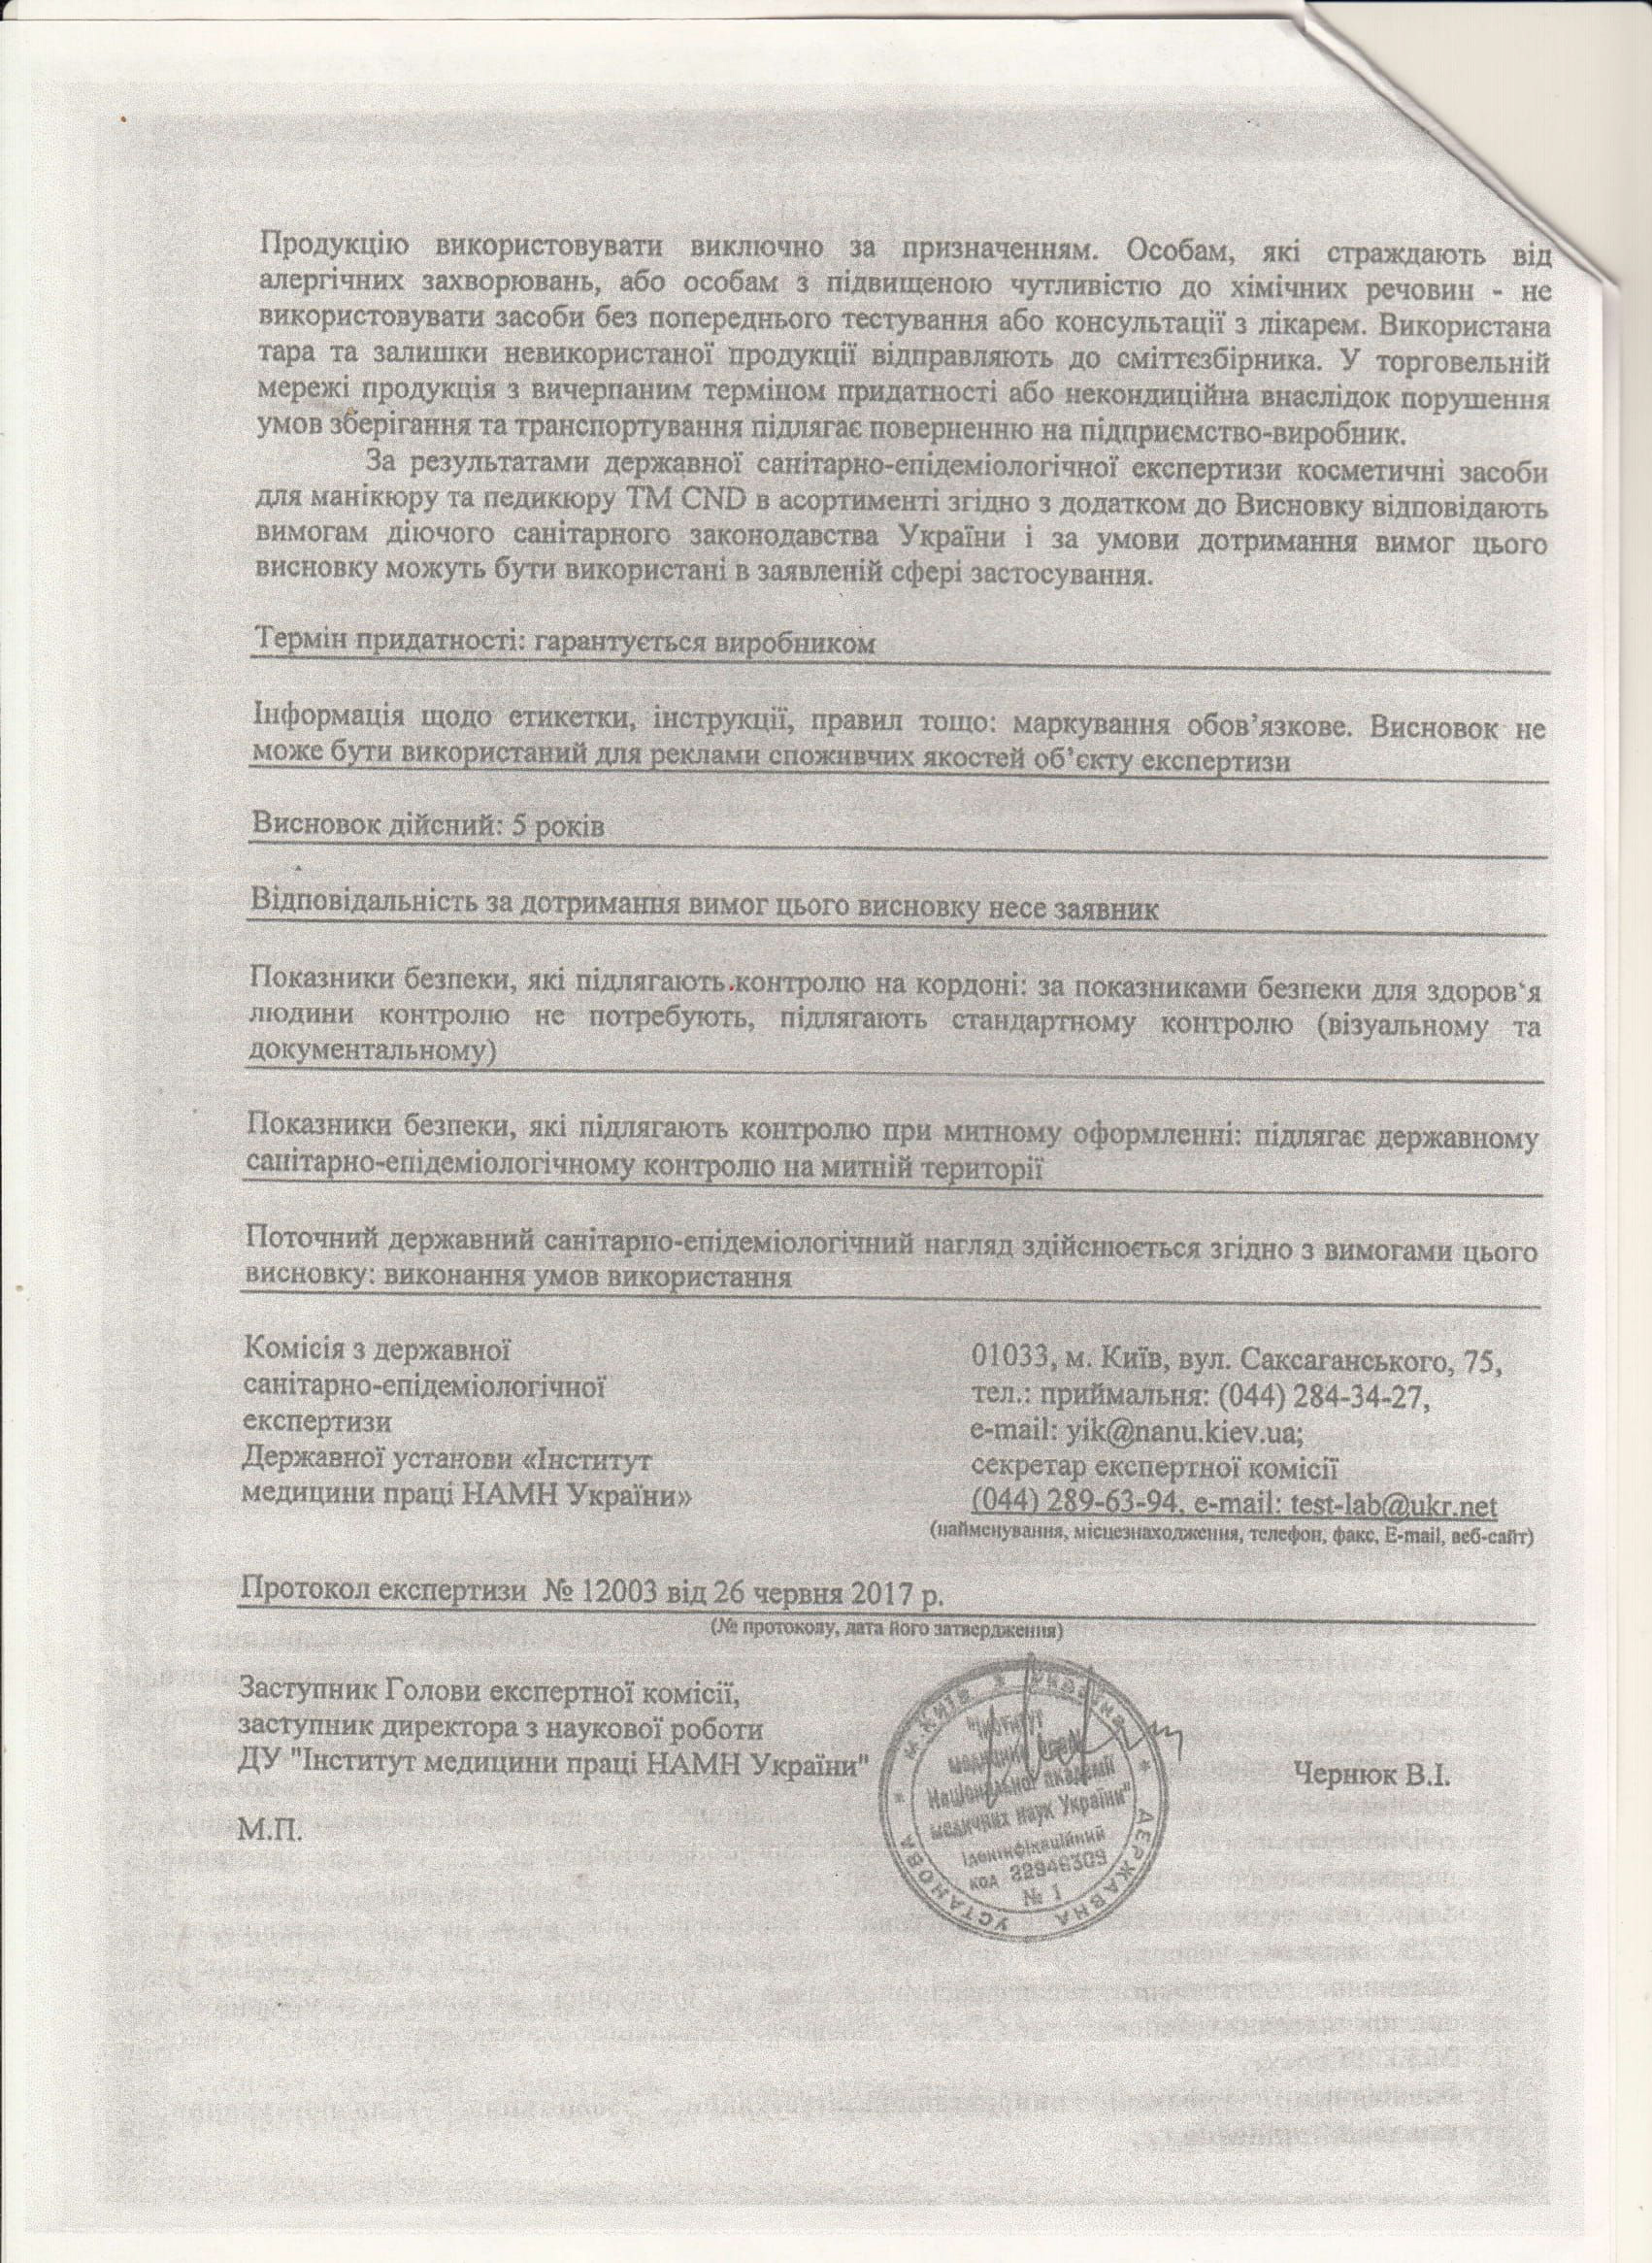 Сертификат качества на гель-лаки CND, страница 2